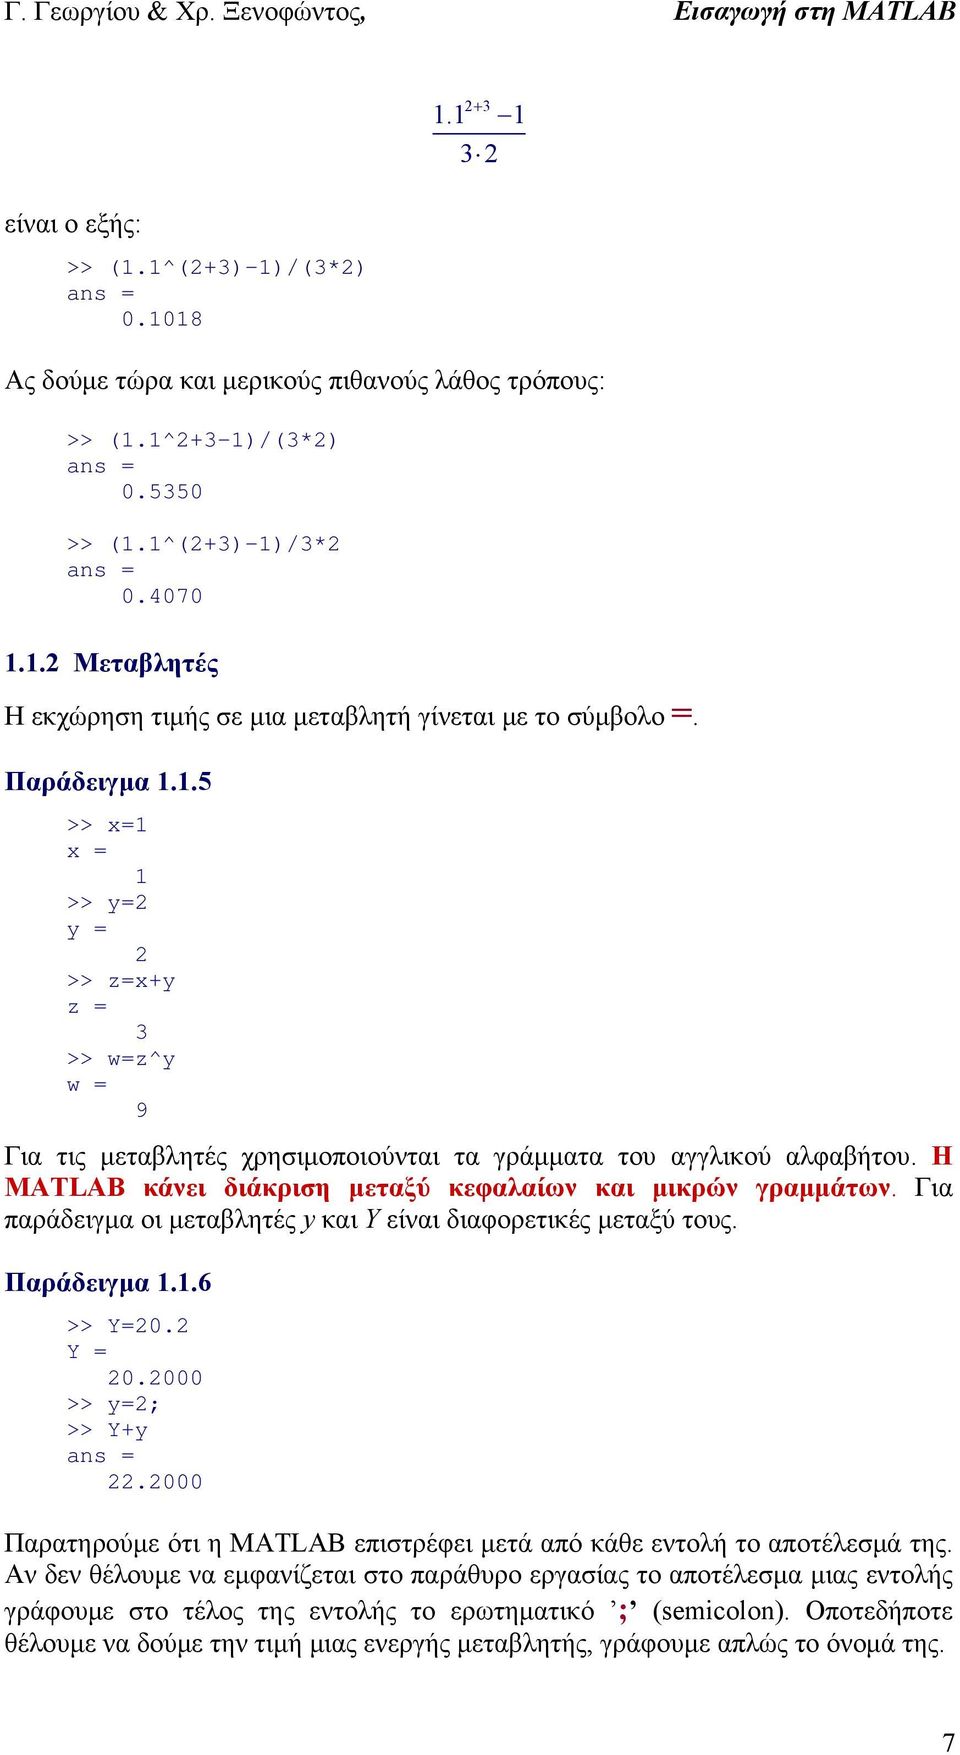 .5 >> x= x = >> y= y = >> z=x+y z = 3 >> w=z^y w = 9 Για τις μεταβλητές χρησιμοποιούνται τα γράμματα του αγγλικού αλφαβήτου. Η MATLAB κάνει διάκριση μεταξύ κεφαλαίων και μικρών γραμμάτων.